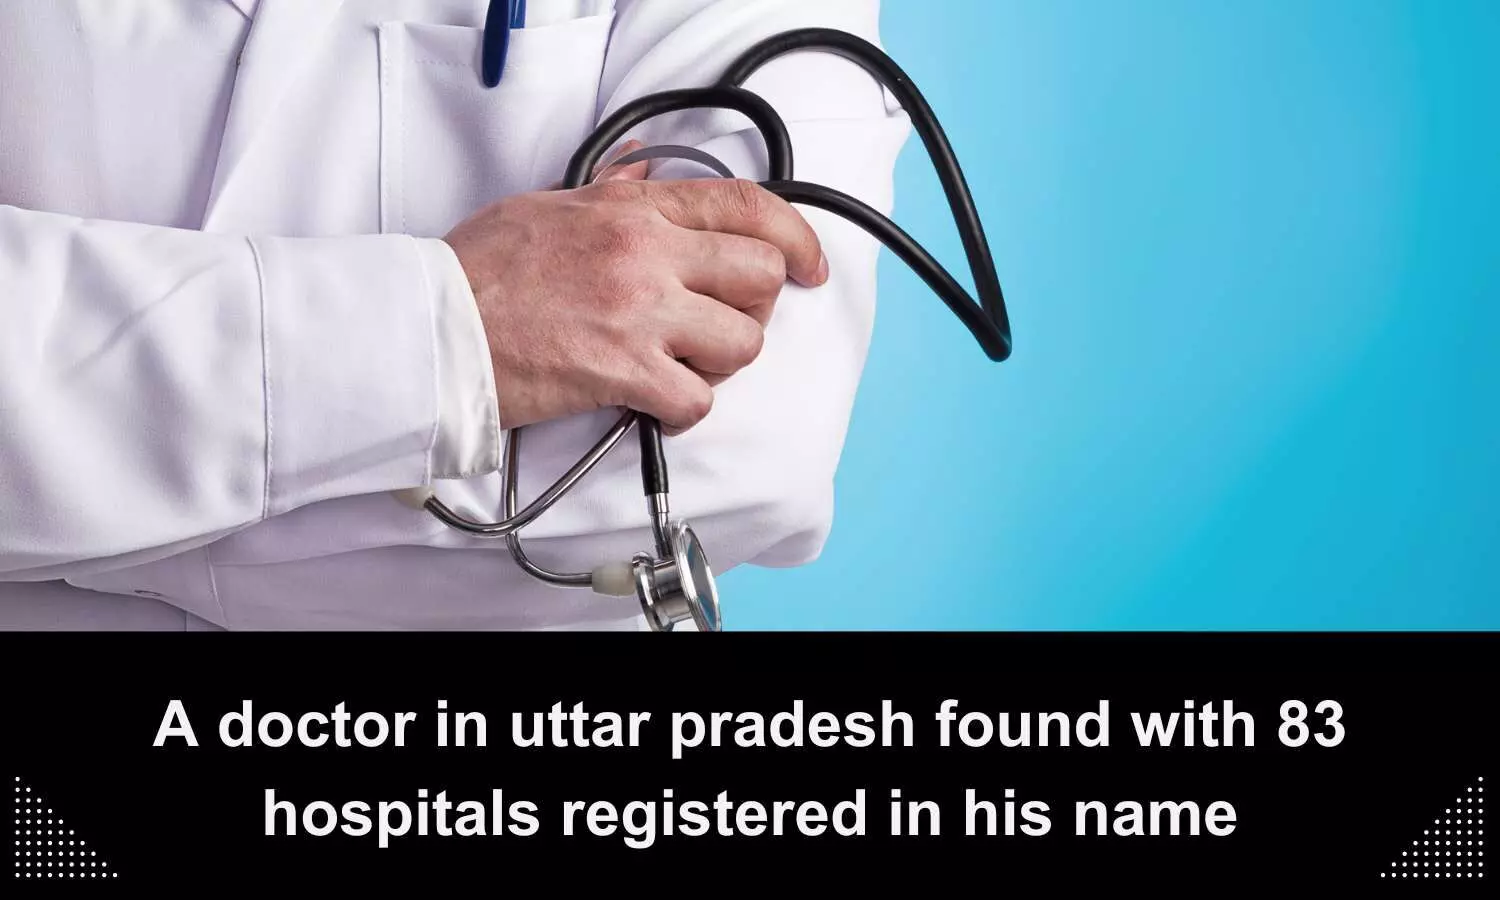 83 hospitals found registered under 1 doctors name